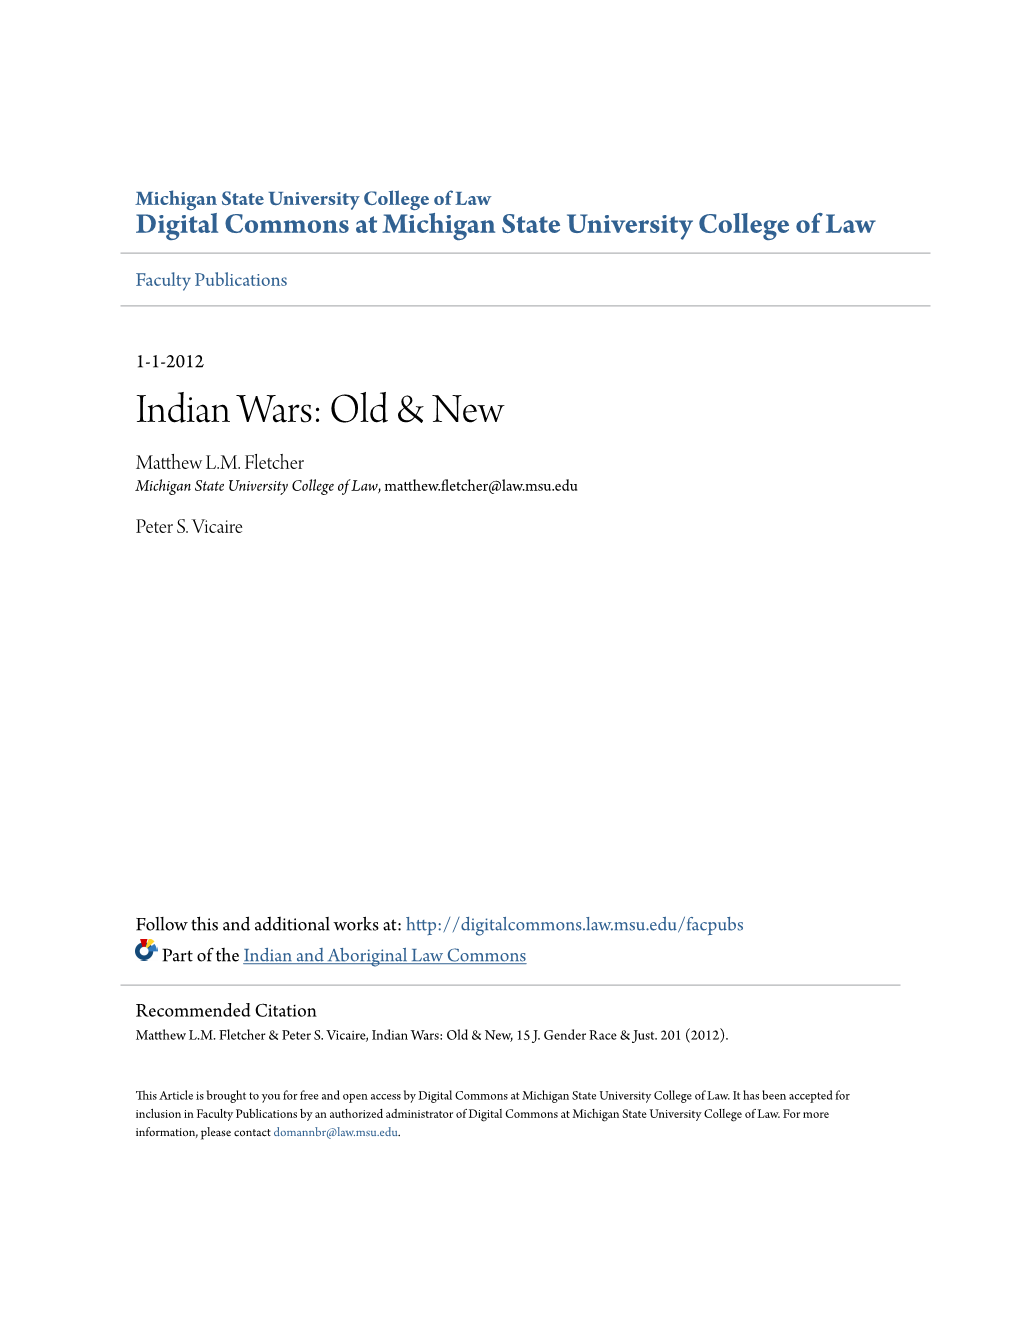 Indian Wars: Old & New Matthew L.M